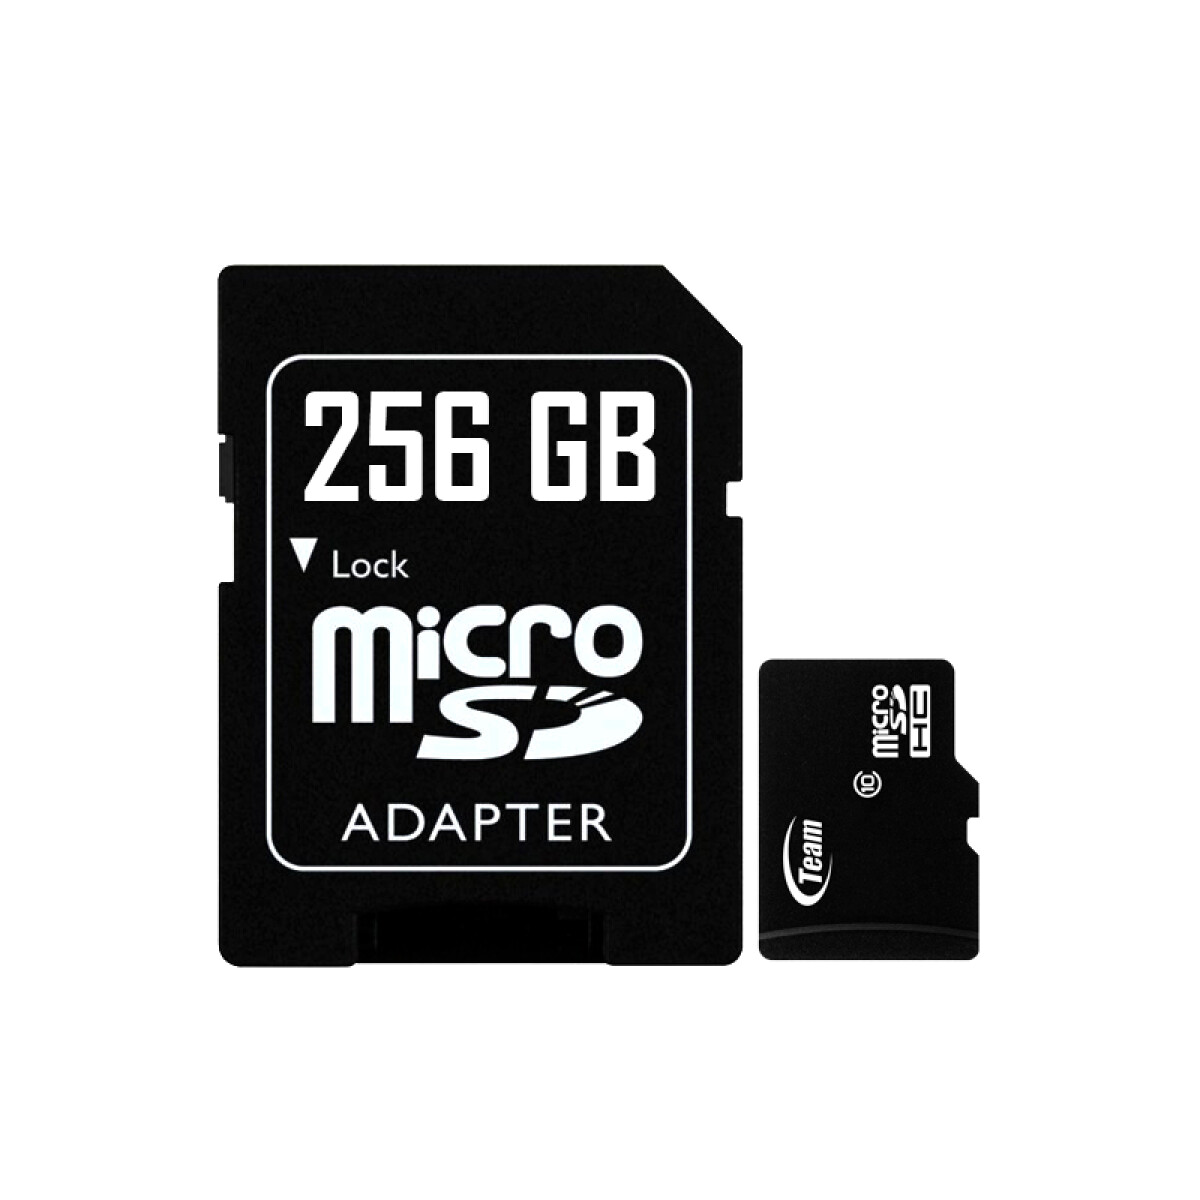 Memoria micro SD 256GB clase 10 - Unica 